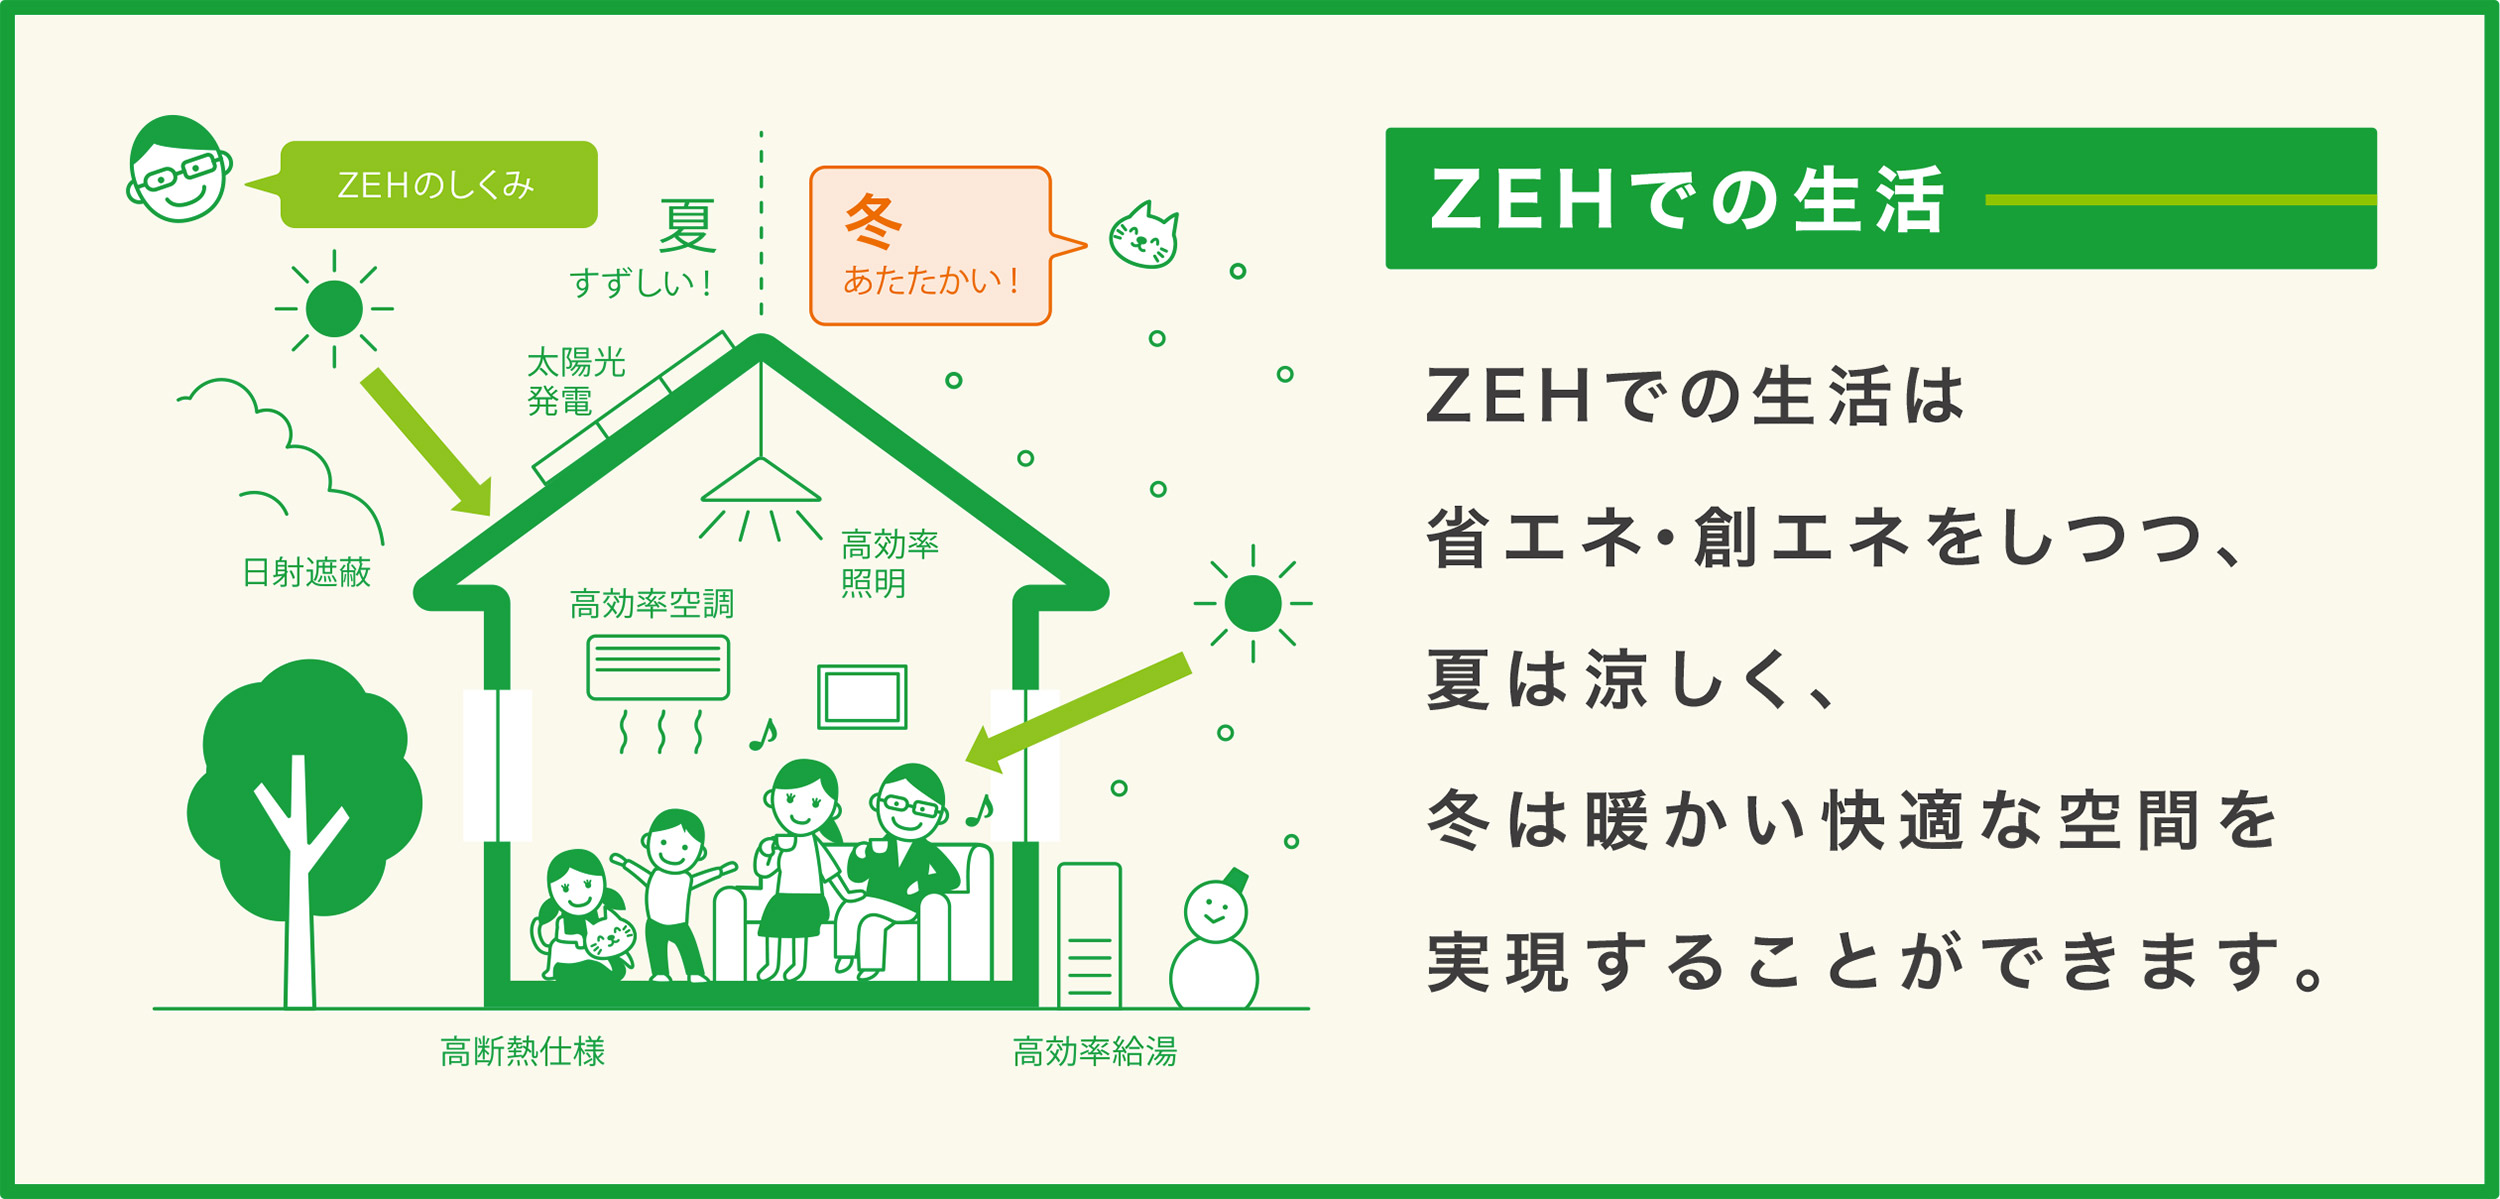 ZEHでの生活 ZEHでの生活は省エネ・創エネをしつつ、夏は涼しく、冬は暖かい快適な空間を実現することができます。